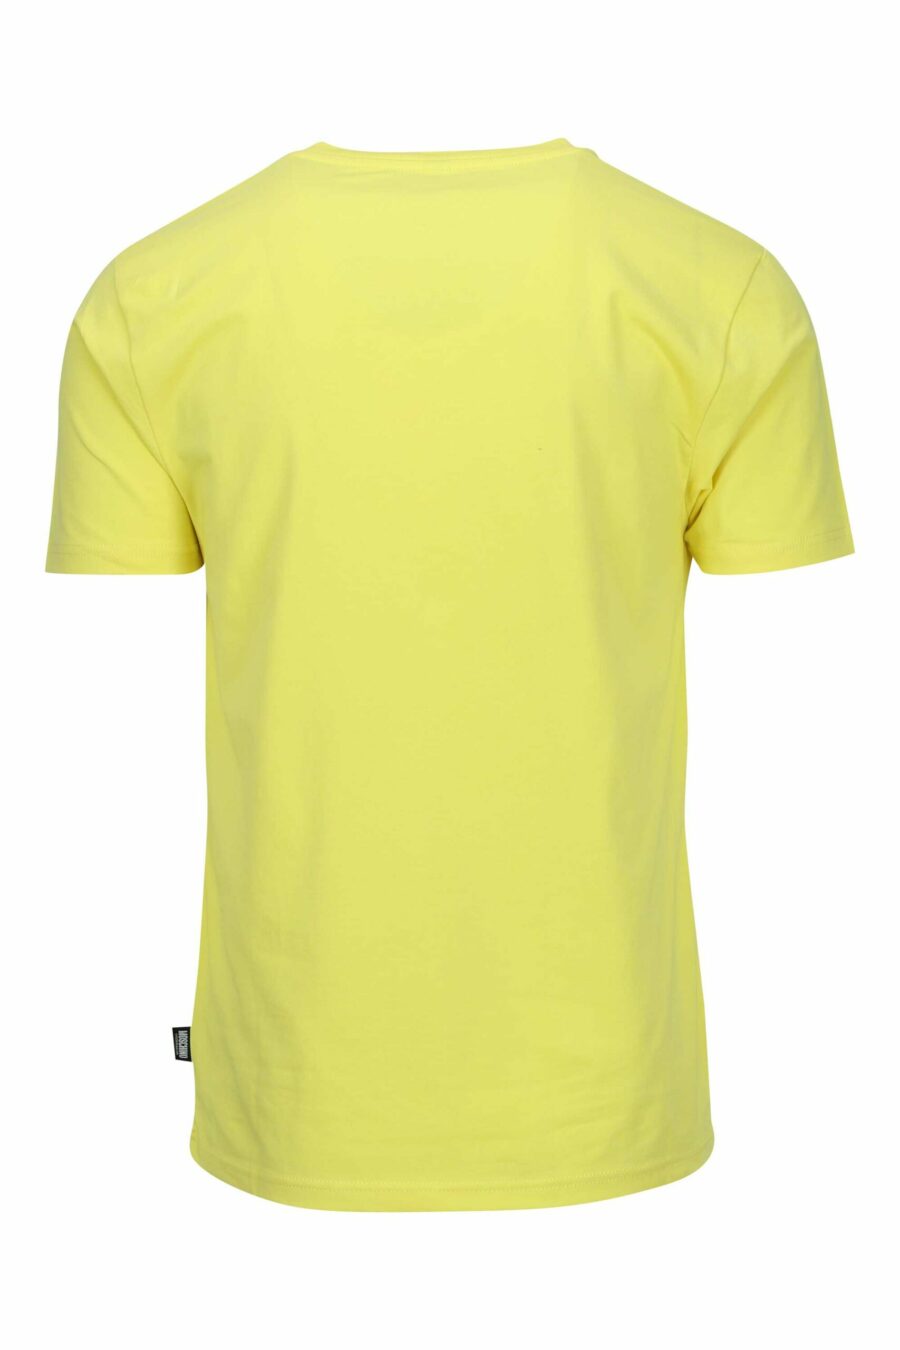 T-shirt amarela com mini logótipo de urso "underbear" - 667113605913 1 scaled